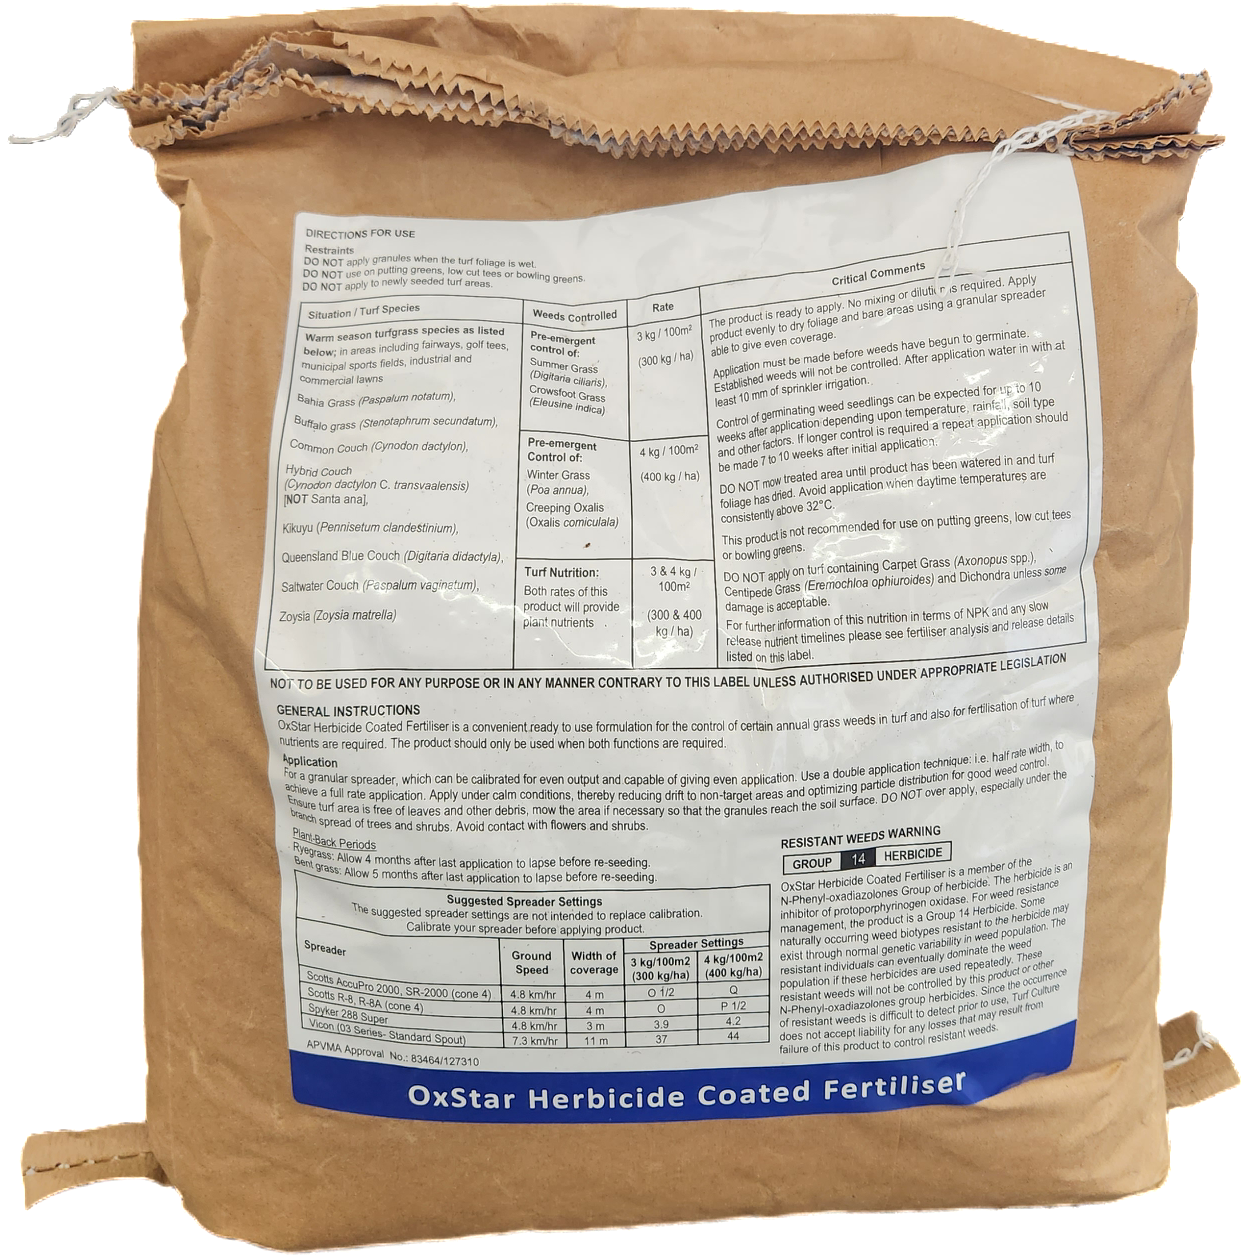 OxStar Herbicide Coated Fertiliser - 8Kg Bag